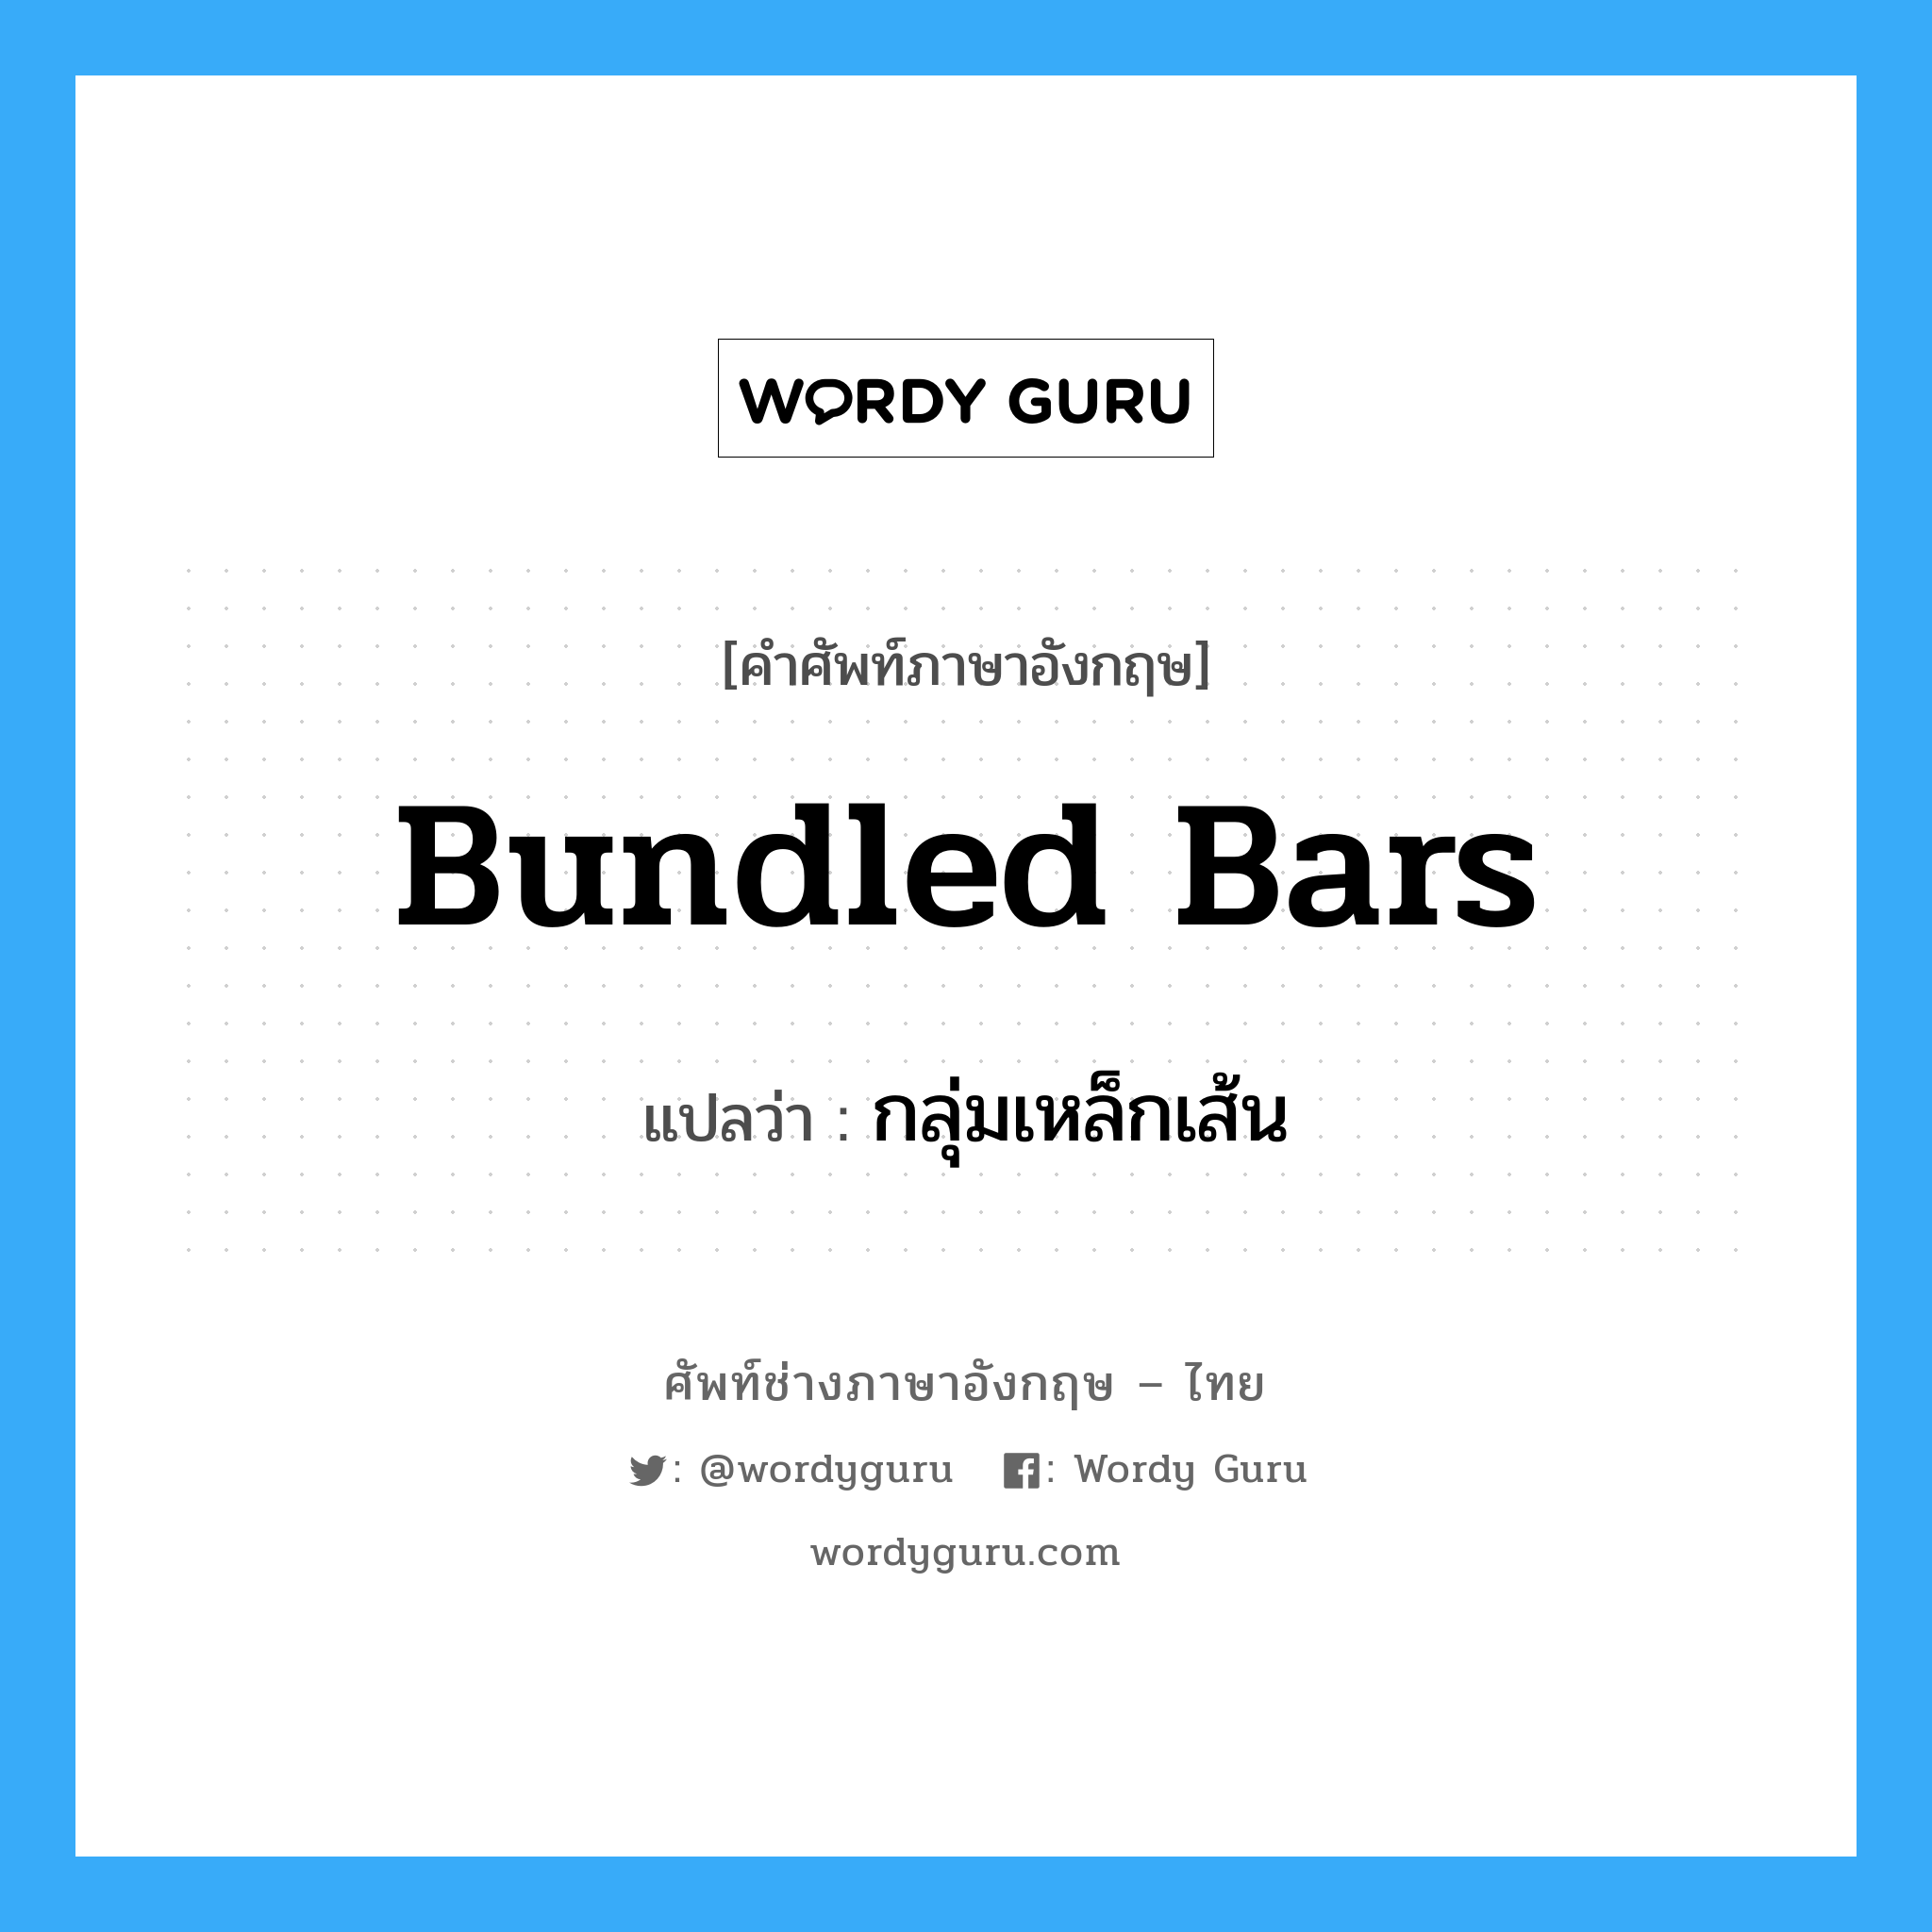 bundled bars แปลว่า?, คำศัพท์ช่างภาษาอังกฤษ - ไทย bundled bars คำศัพท์ภาษาอังกฤษ bundled bars แปลว่า กลุ่มเหล็กเส้น